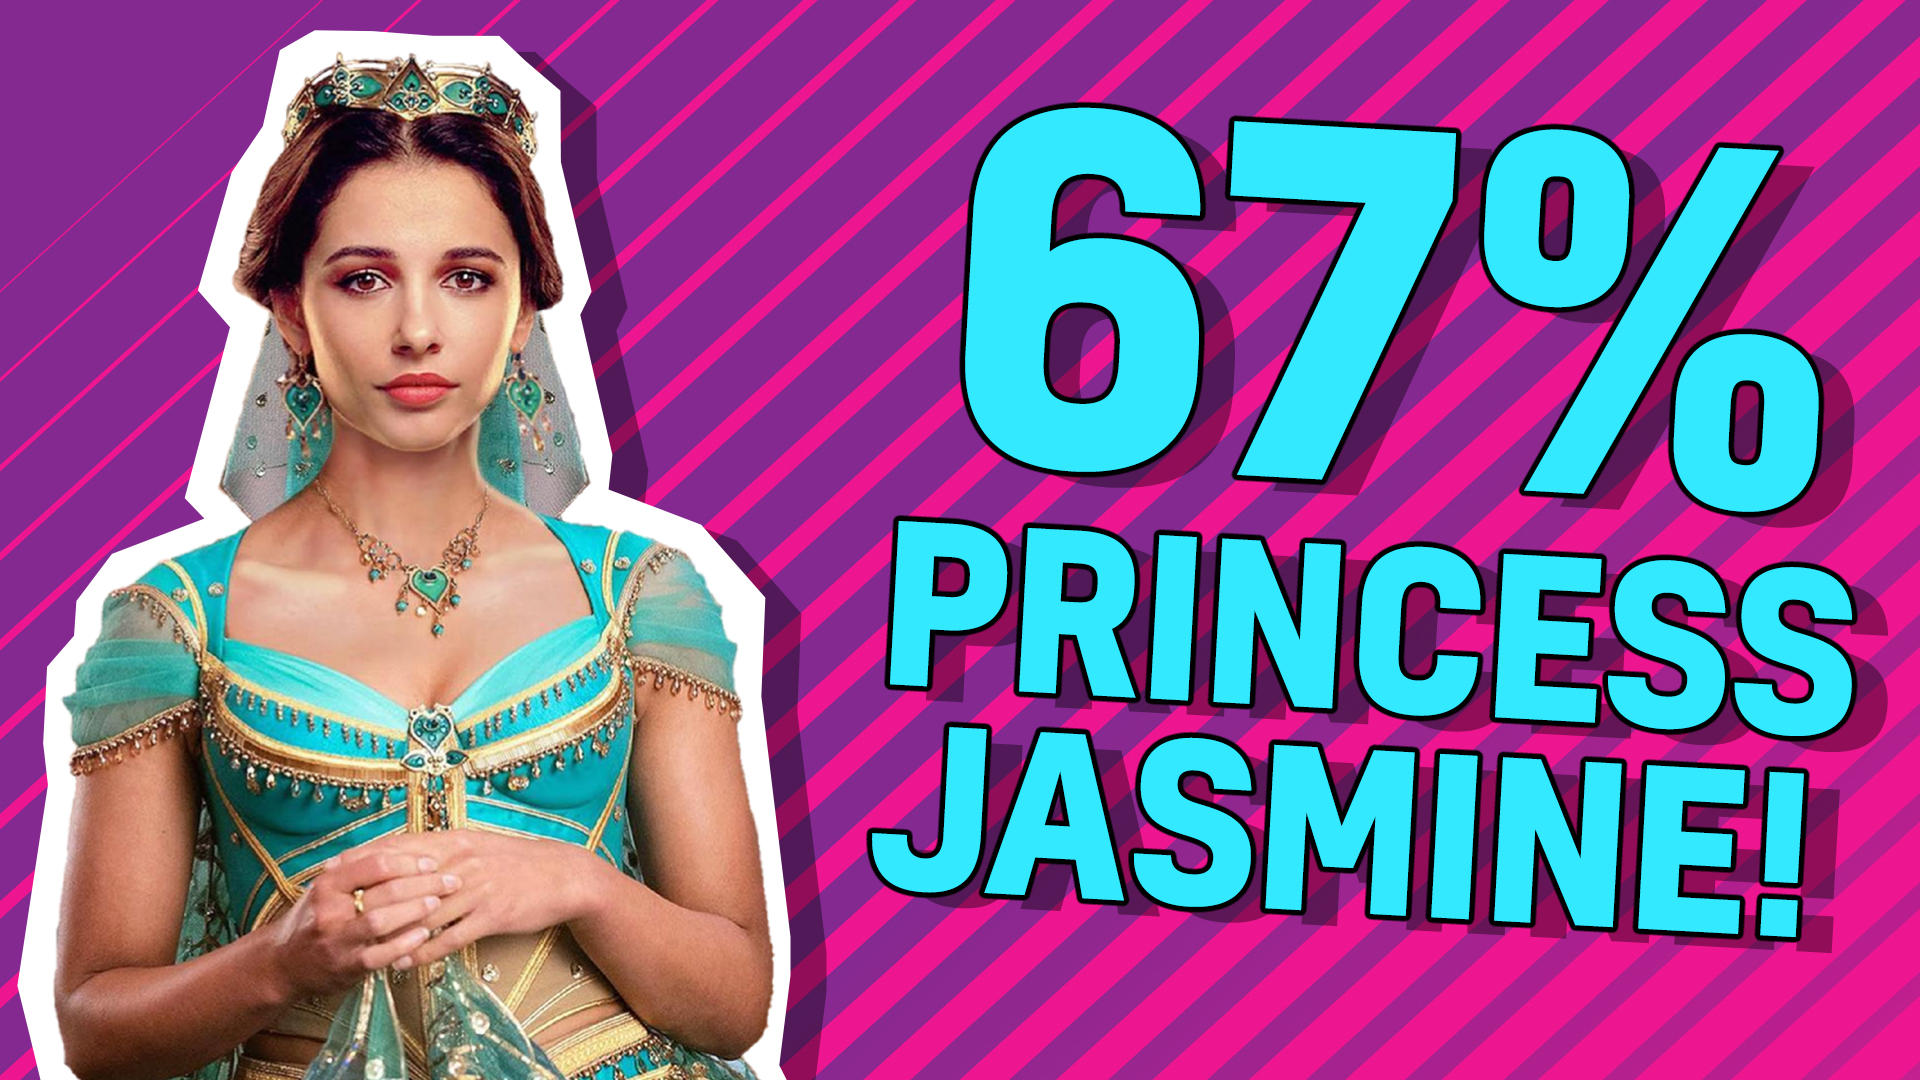 67% Princess Jasmine!